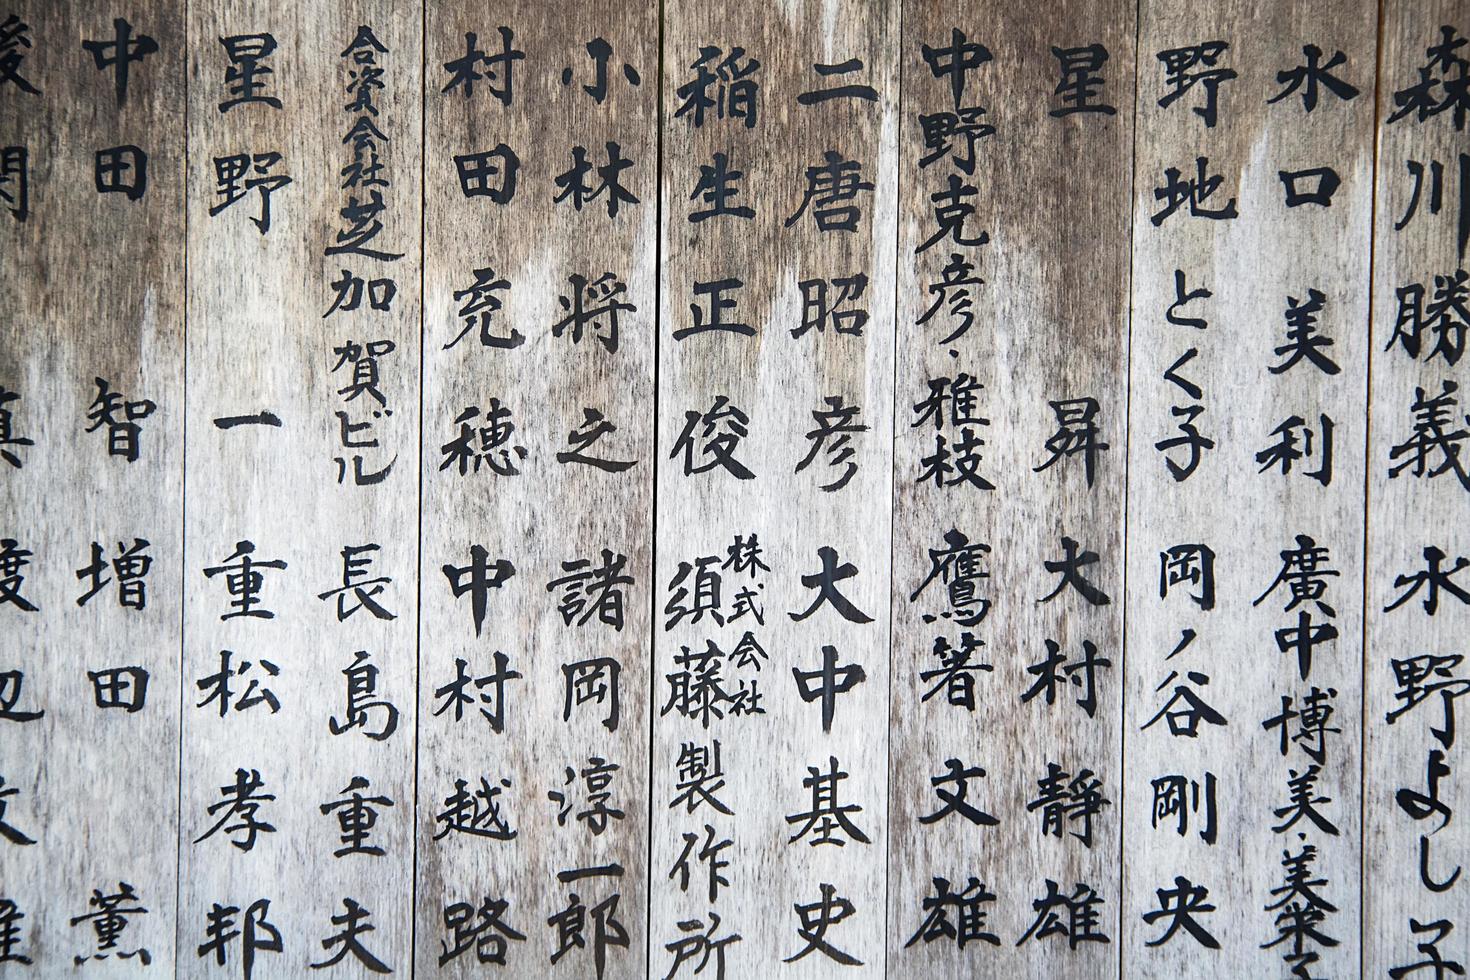 nikko, giappone, 2016 - tavole di legno con caratteri giapponesi al di fuori del tempio di nikko, in giappone. santuari e templi nikko sono patrimonio mondiale dell'unesco foto